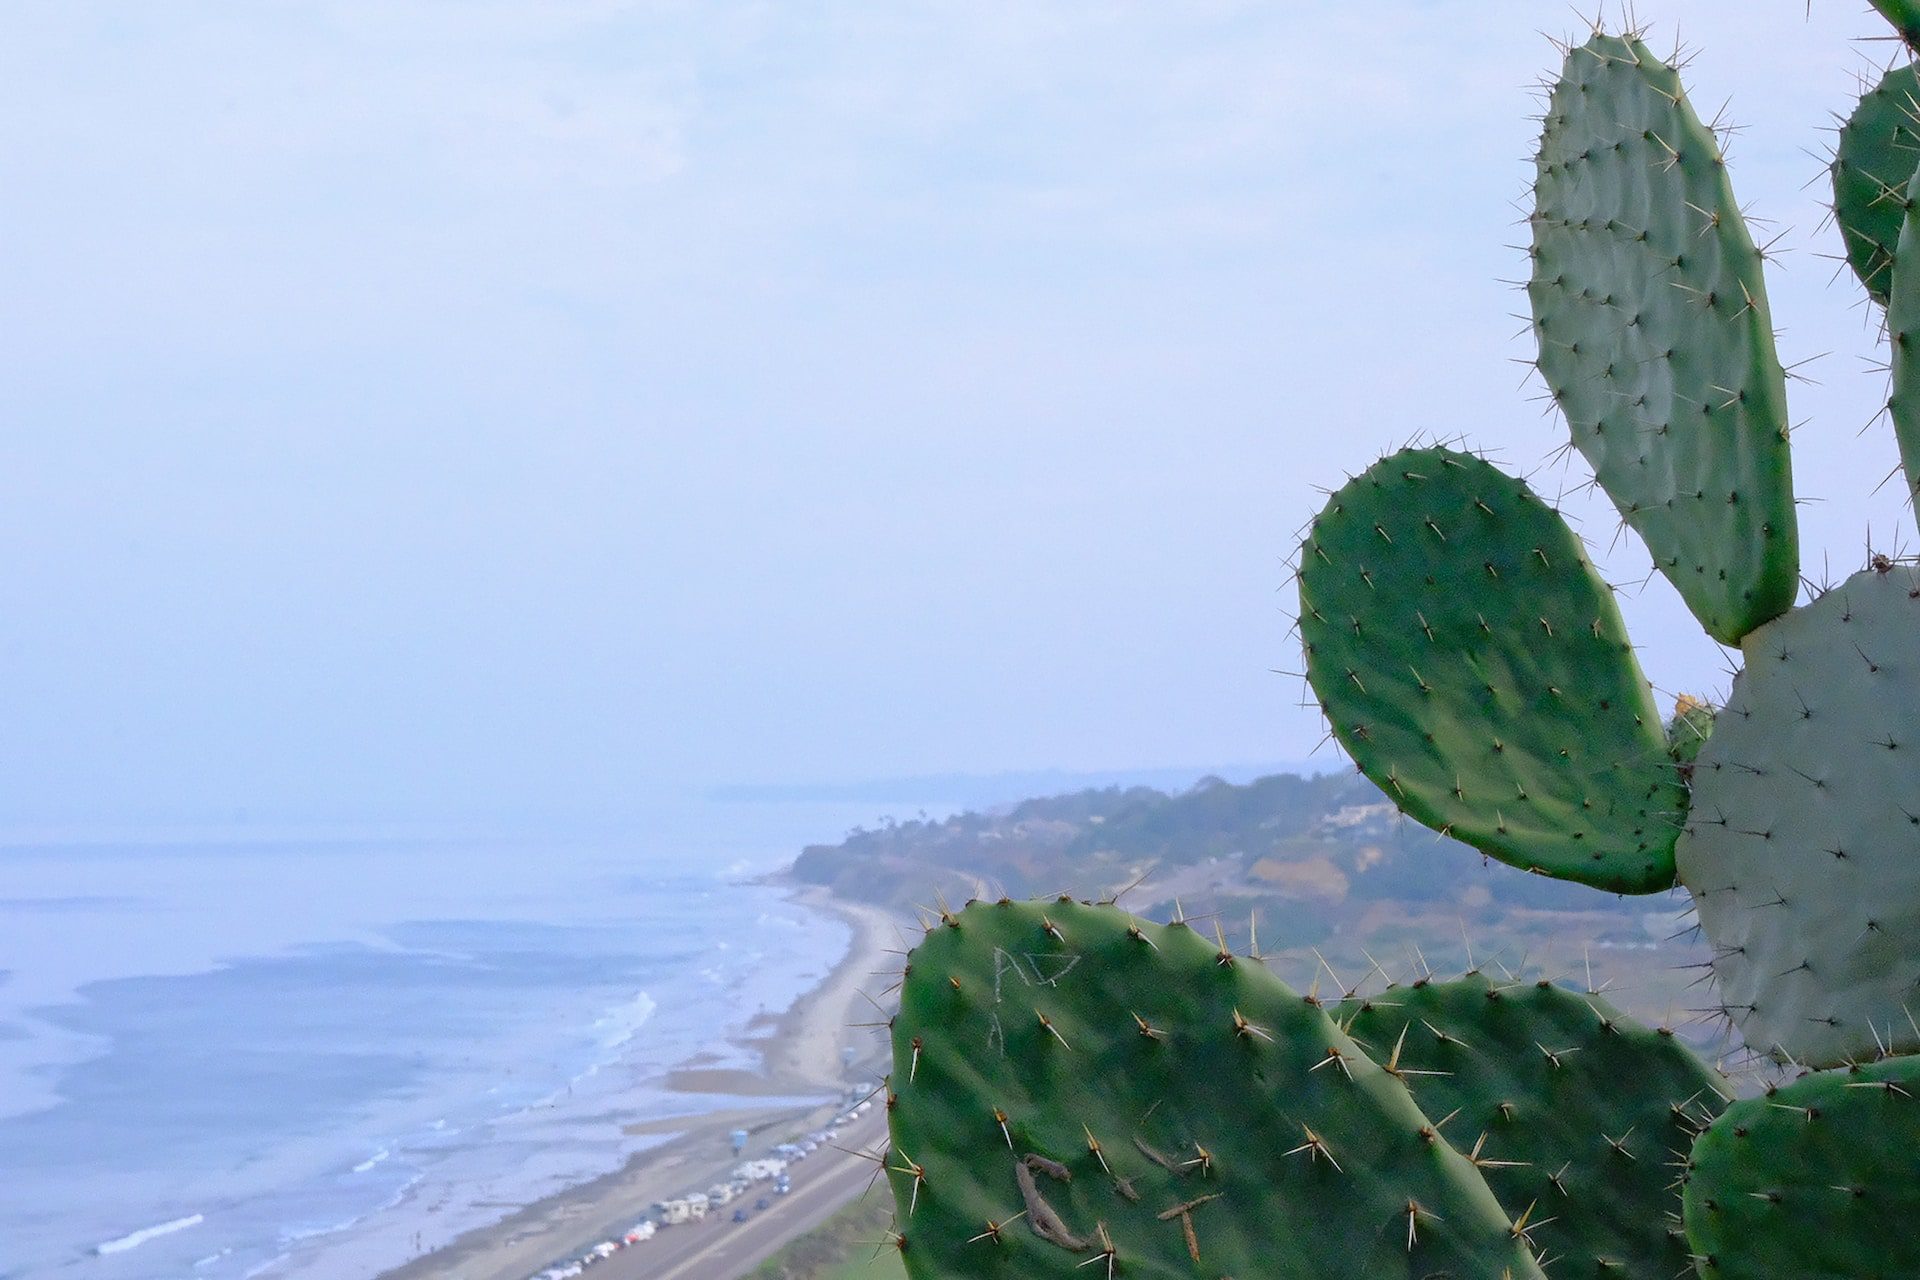 Cactus with beach near Sylmar, California.